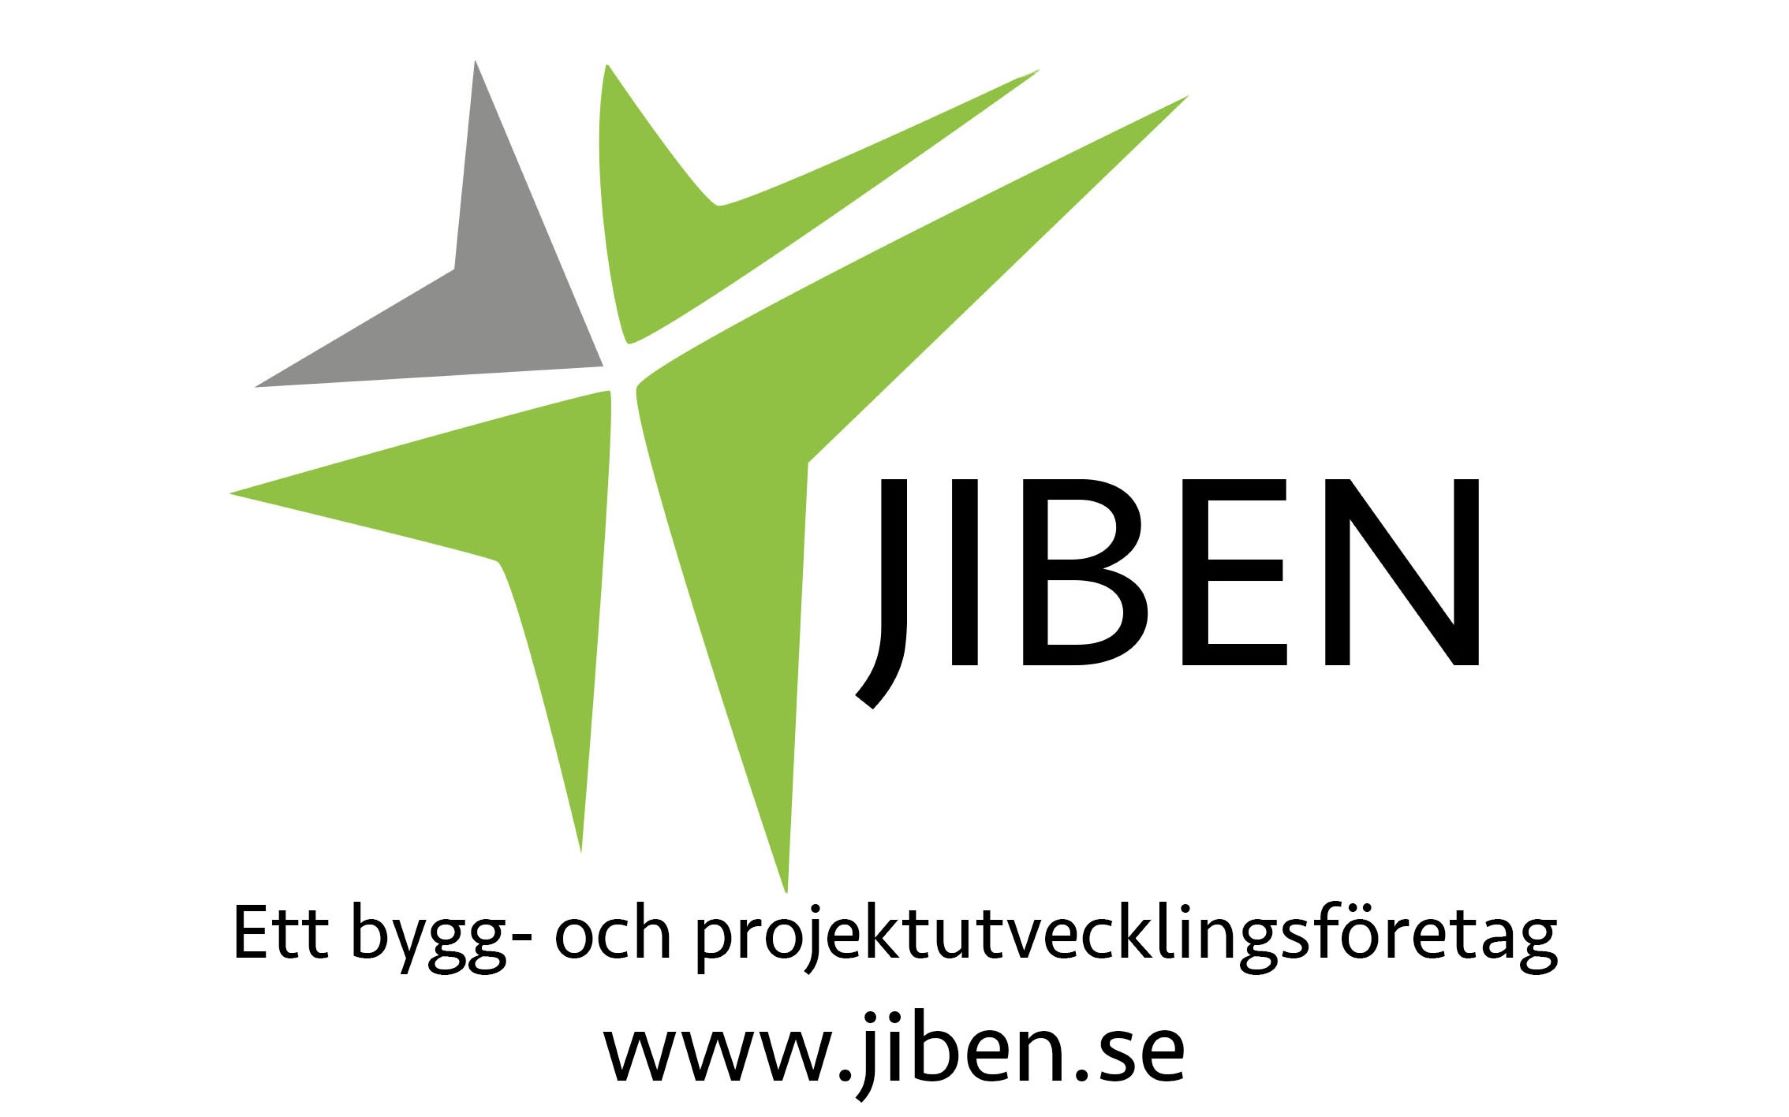 JIBEN Ett bygg- och projektutvecklingsföretag www.jiben.se